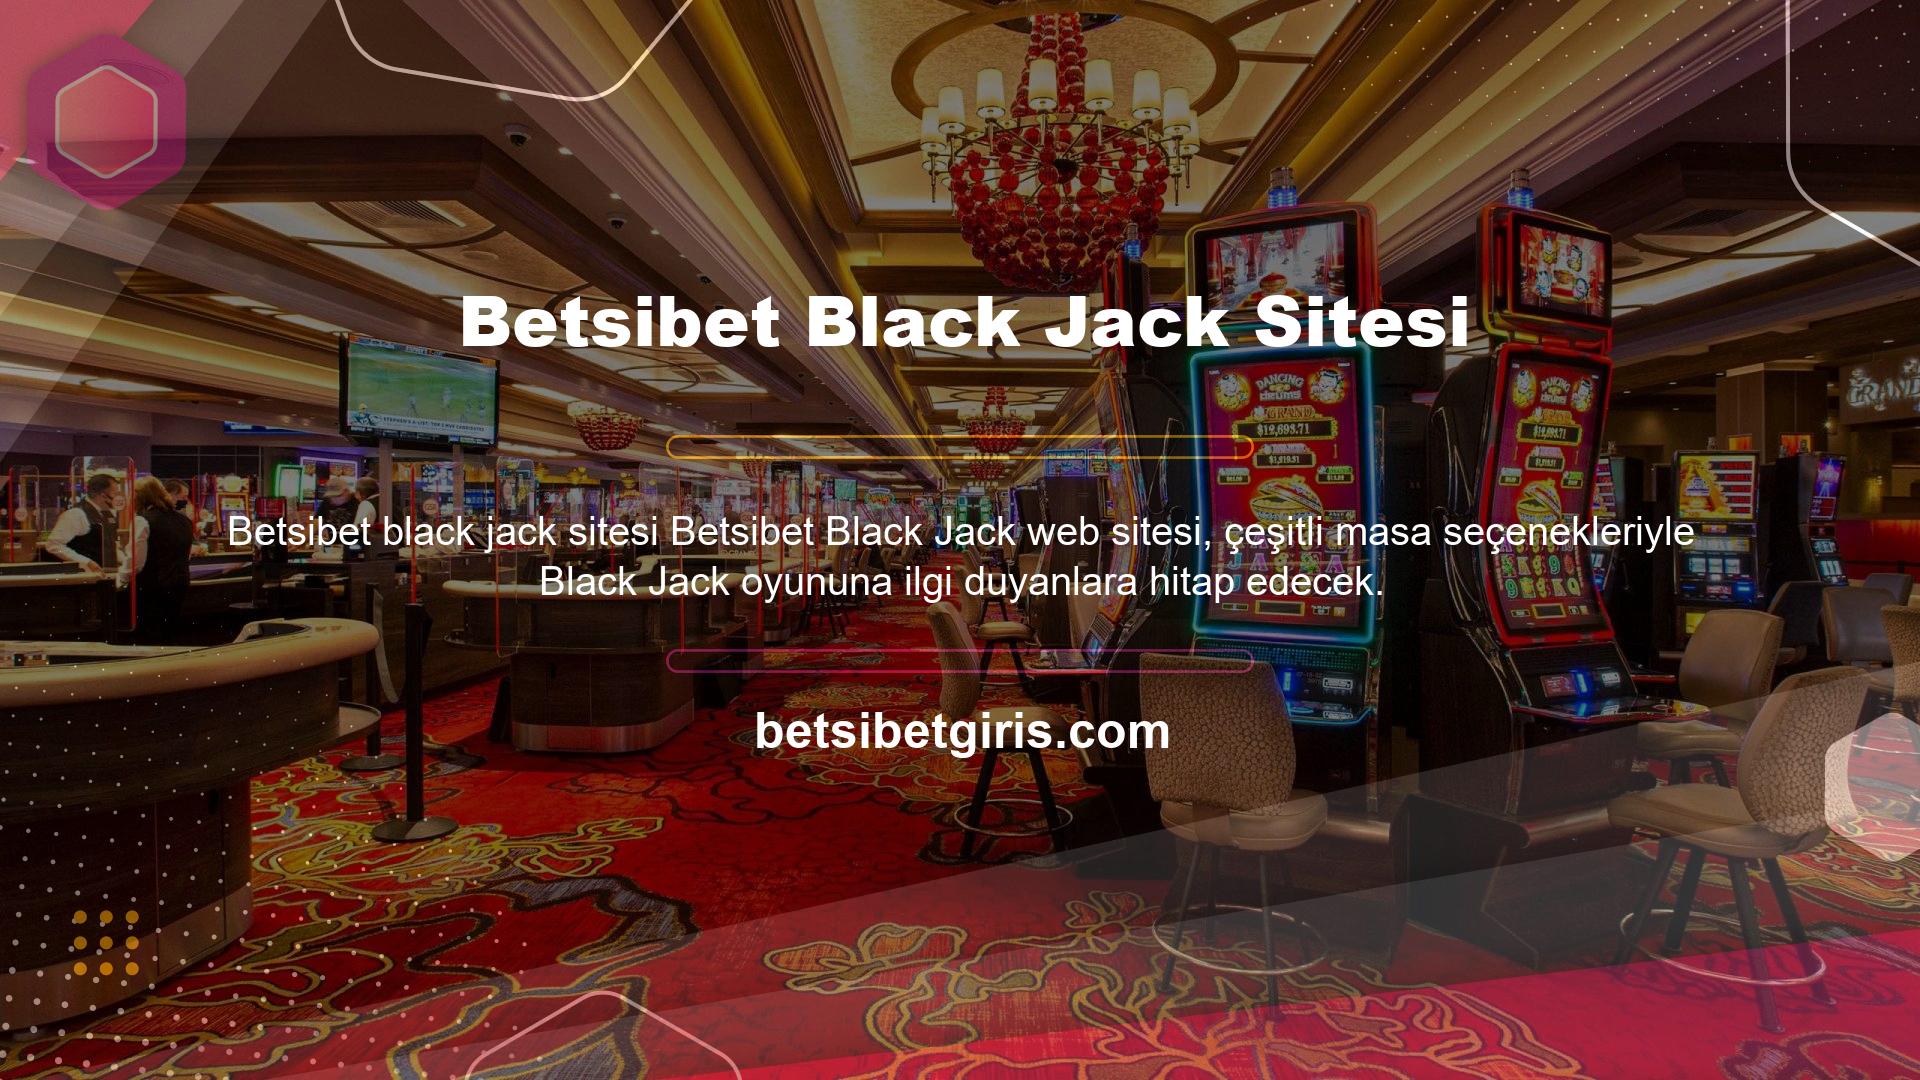 Betsibet yeni giriş adresi: Betsibet giriş işlemini tamamlayıp Canlı Casino Oyunları bölümünü seçtiğinizde karşınıza başka bir oyun masası olan Black Jack masası çıkacaktır